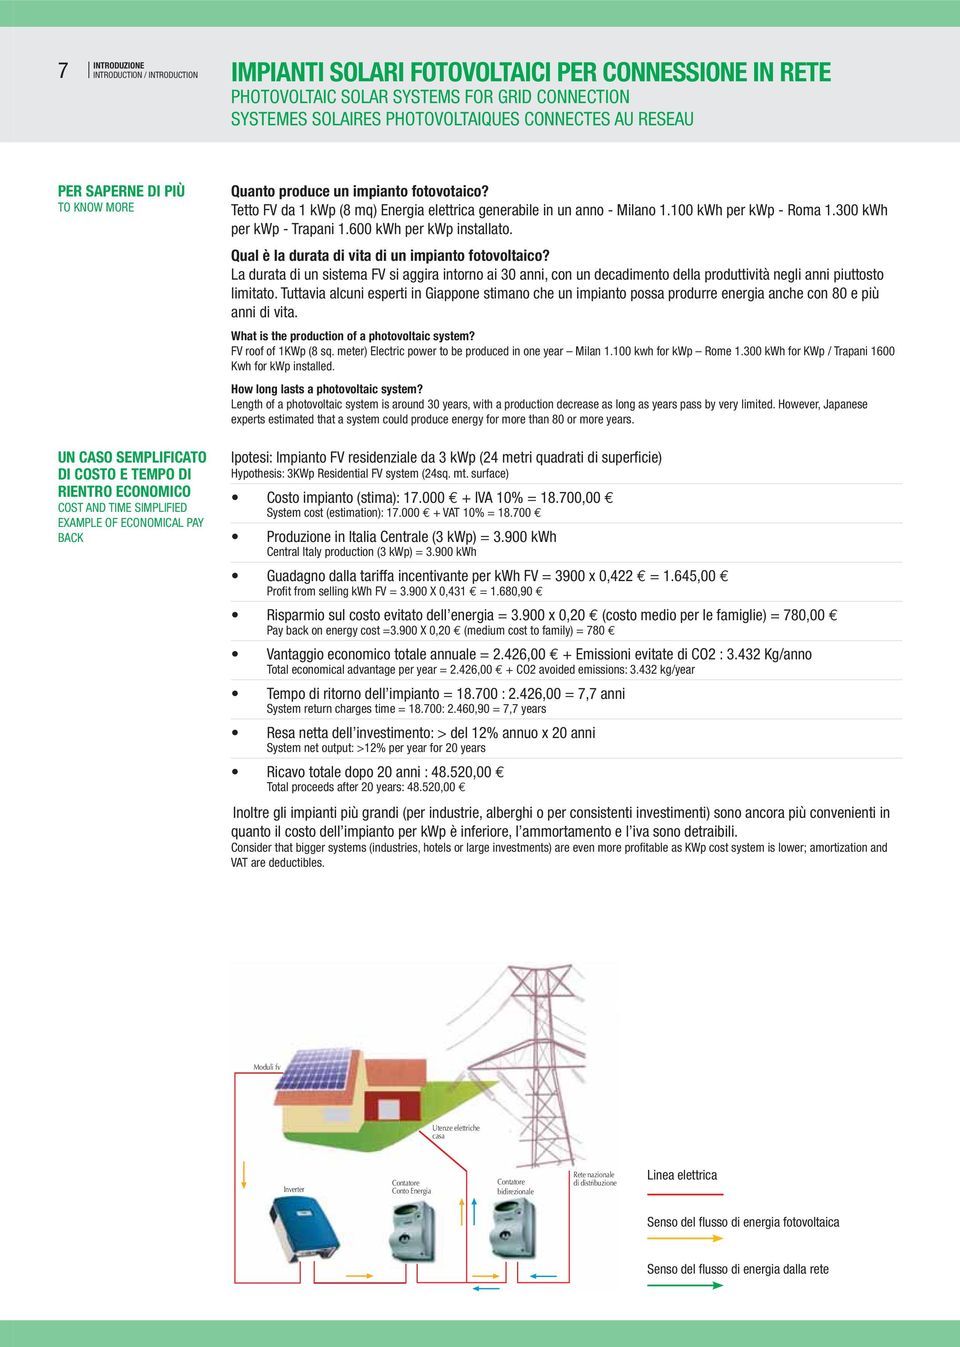 Tetto FV da 1 kwp (8 mq) Energia elettrica generabile in un anno - Milano 1.100 kwh per kwp - Roma 1.300 kwh per kwp - Trapani 1.600 kwh per kwp installato.